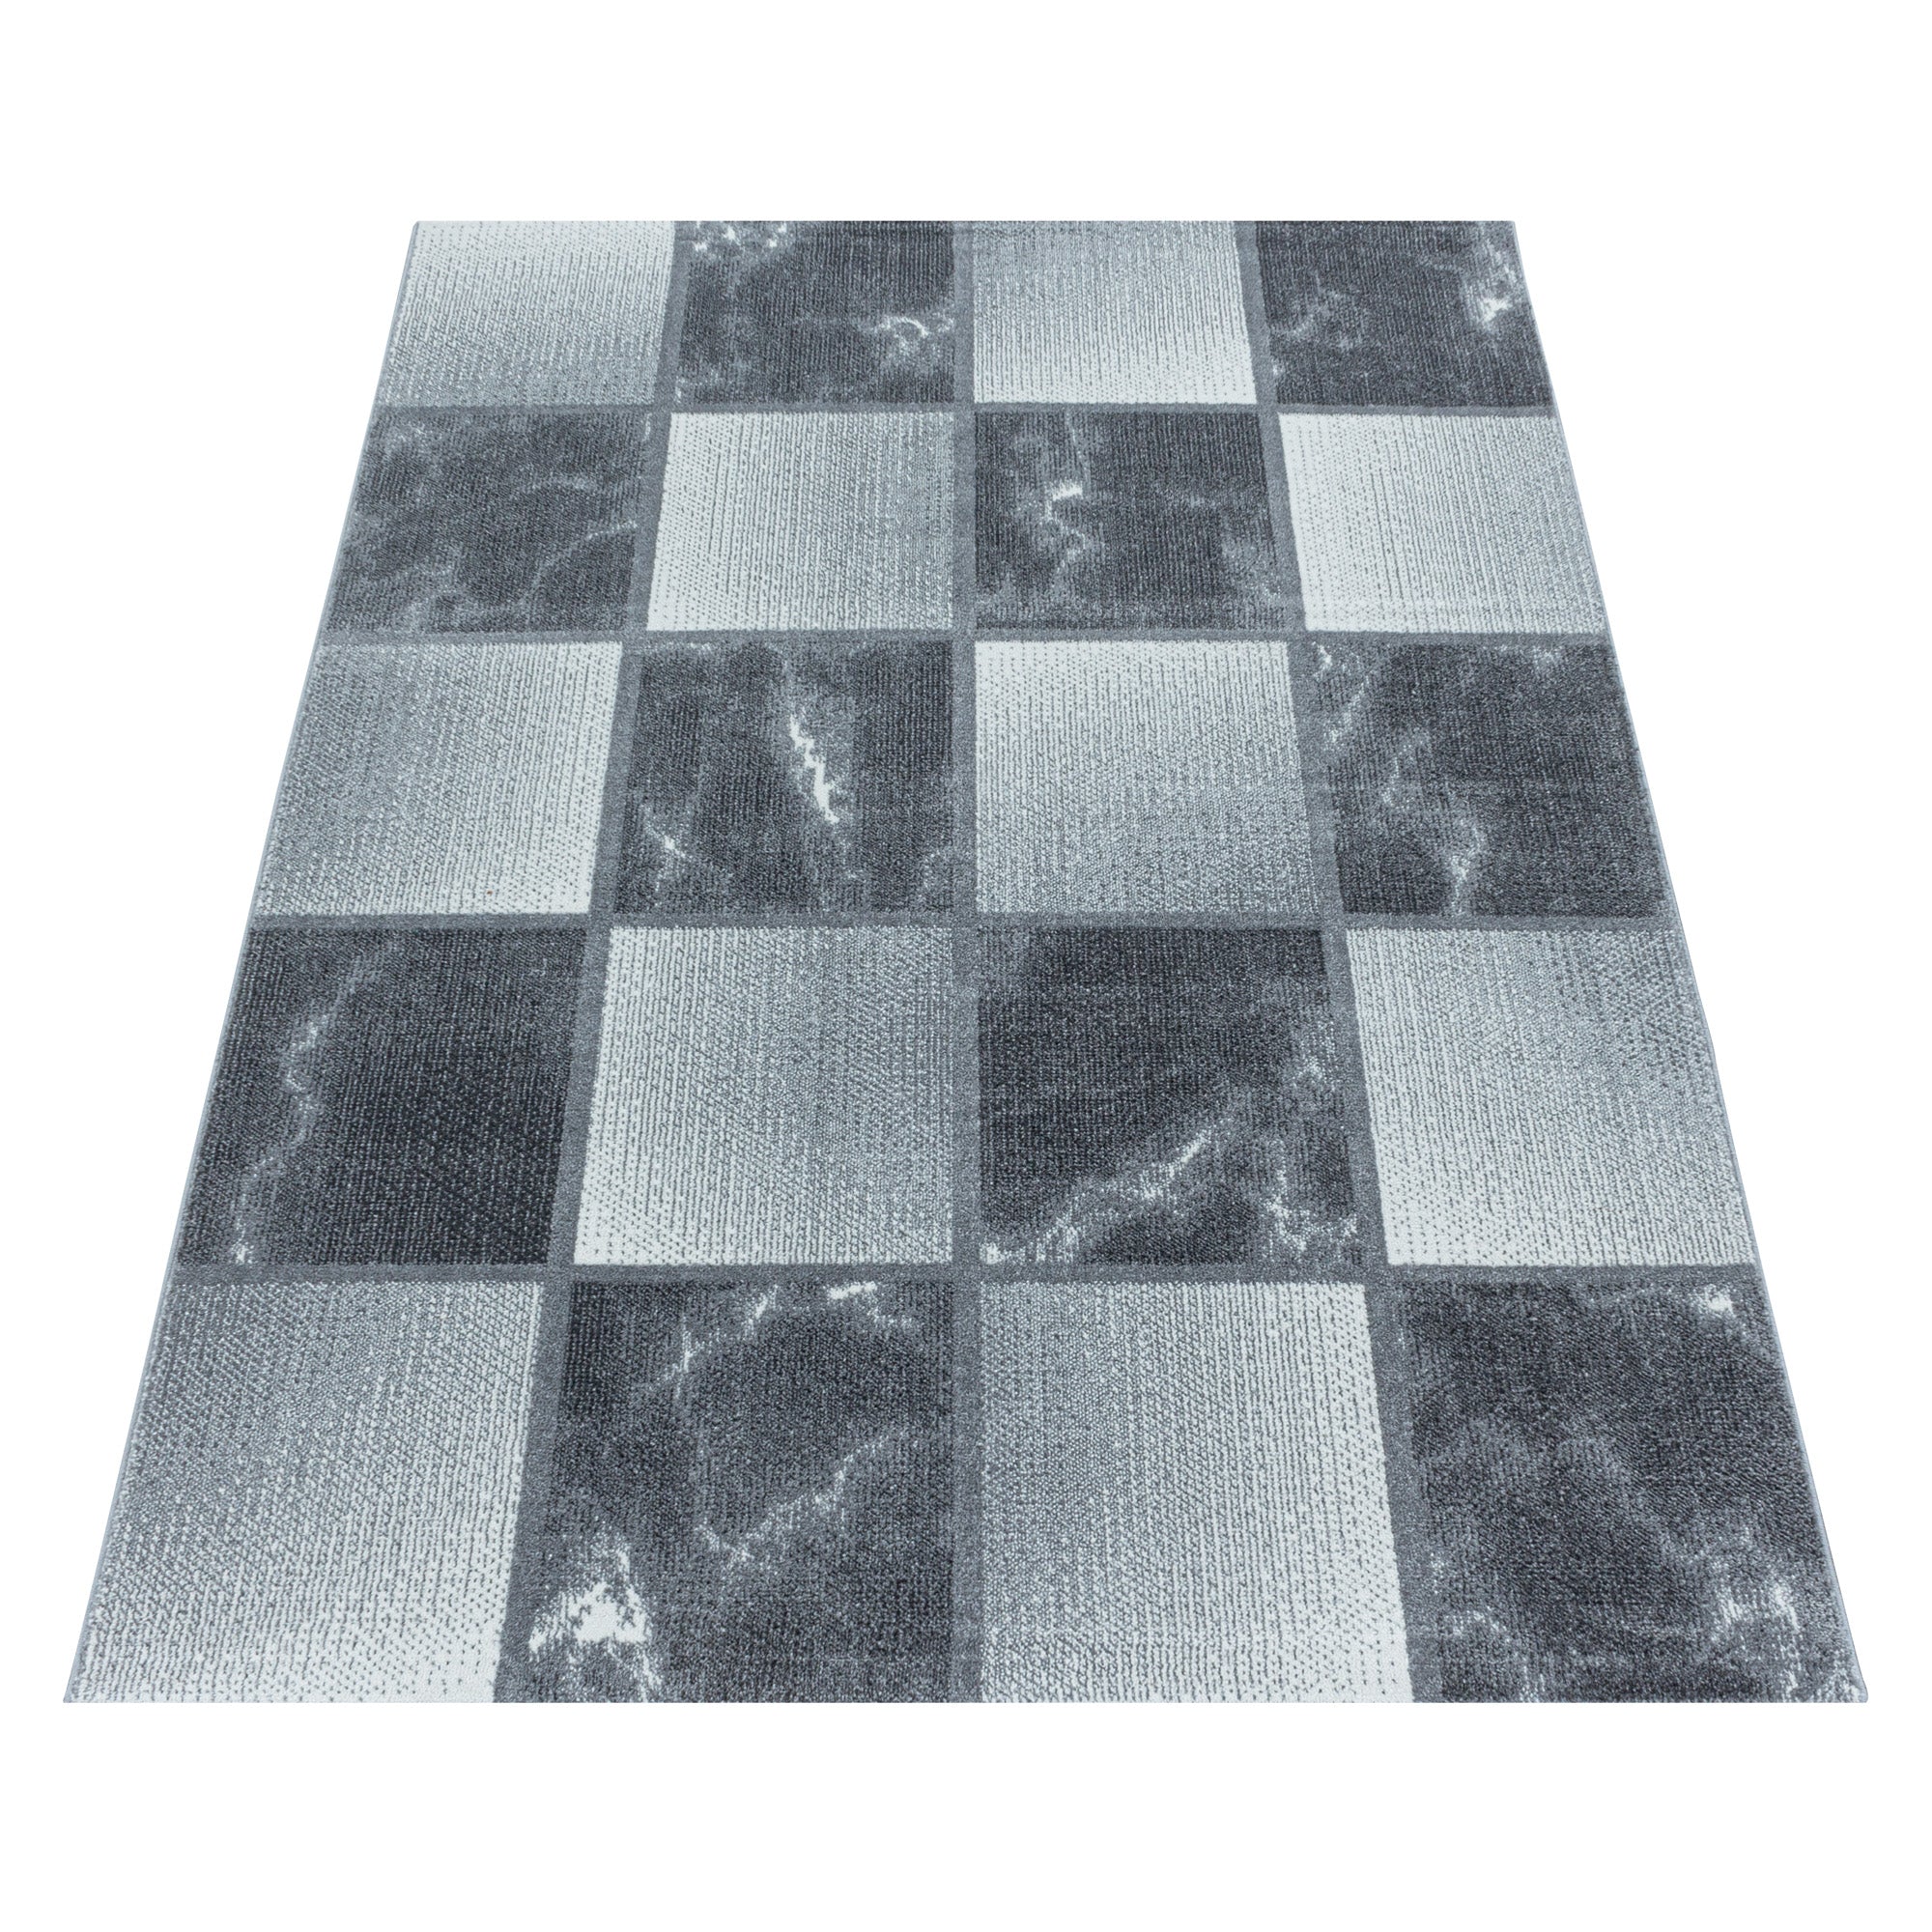 Kurzflor Teppich Grau Hellgrau Quadrat Muster Marmoriert Wohnzimmerteppich Weich